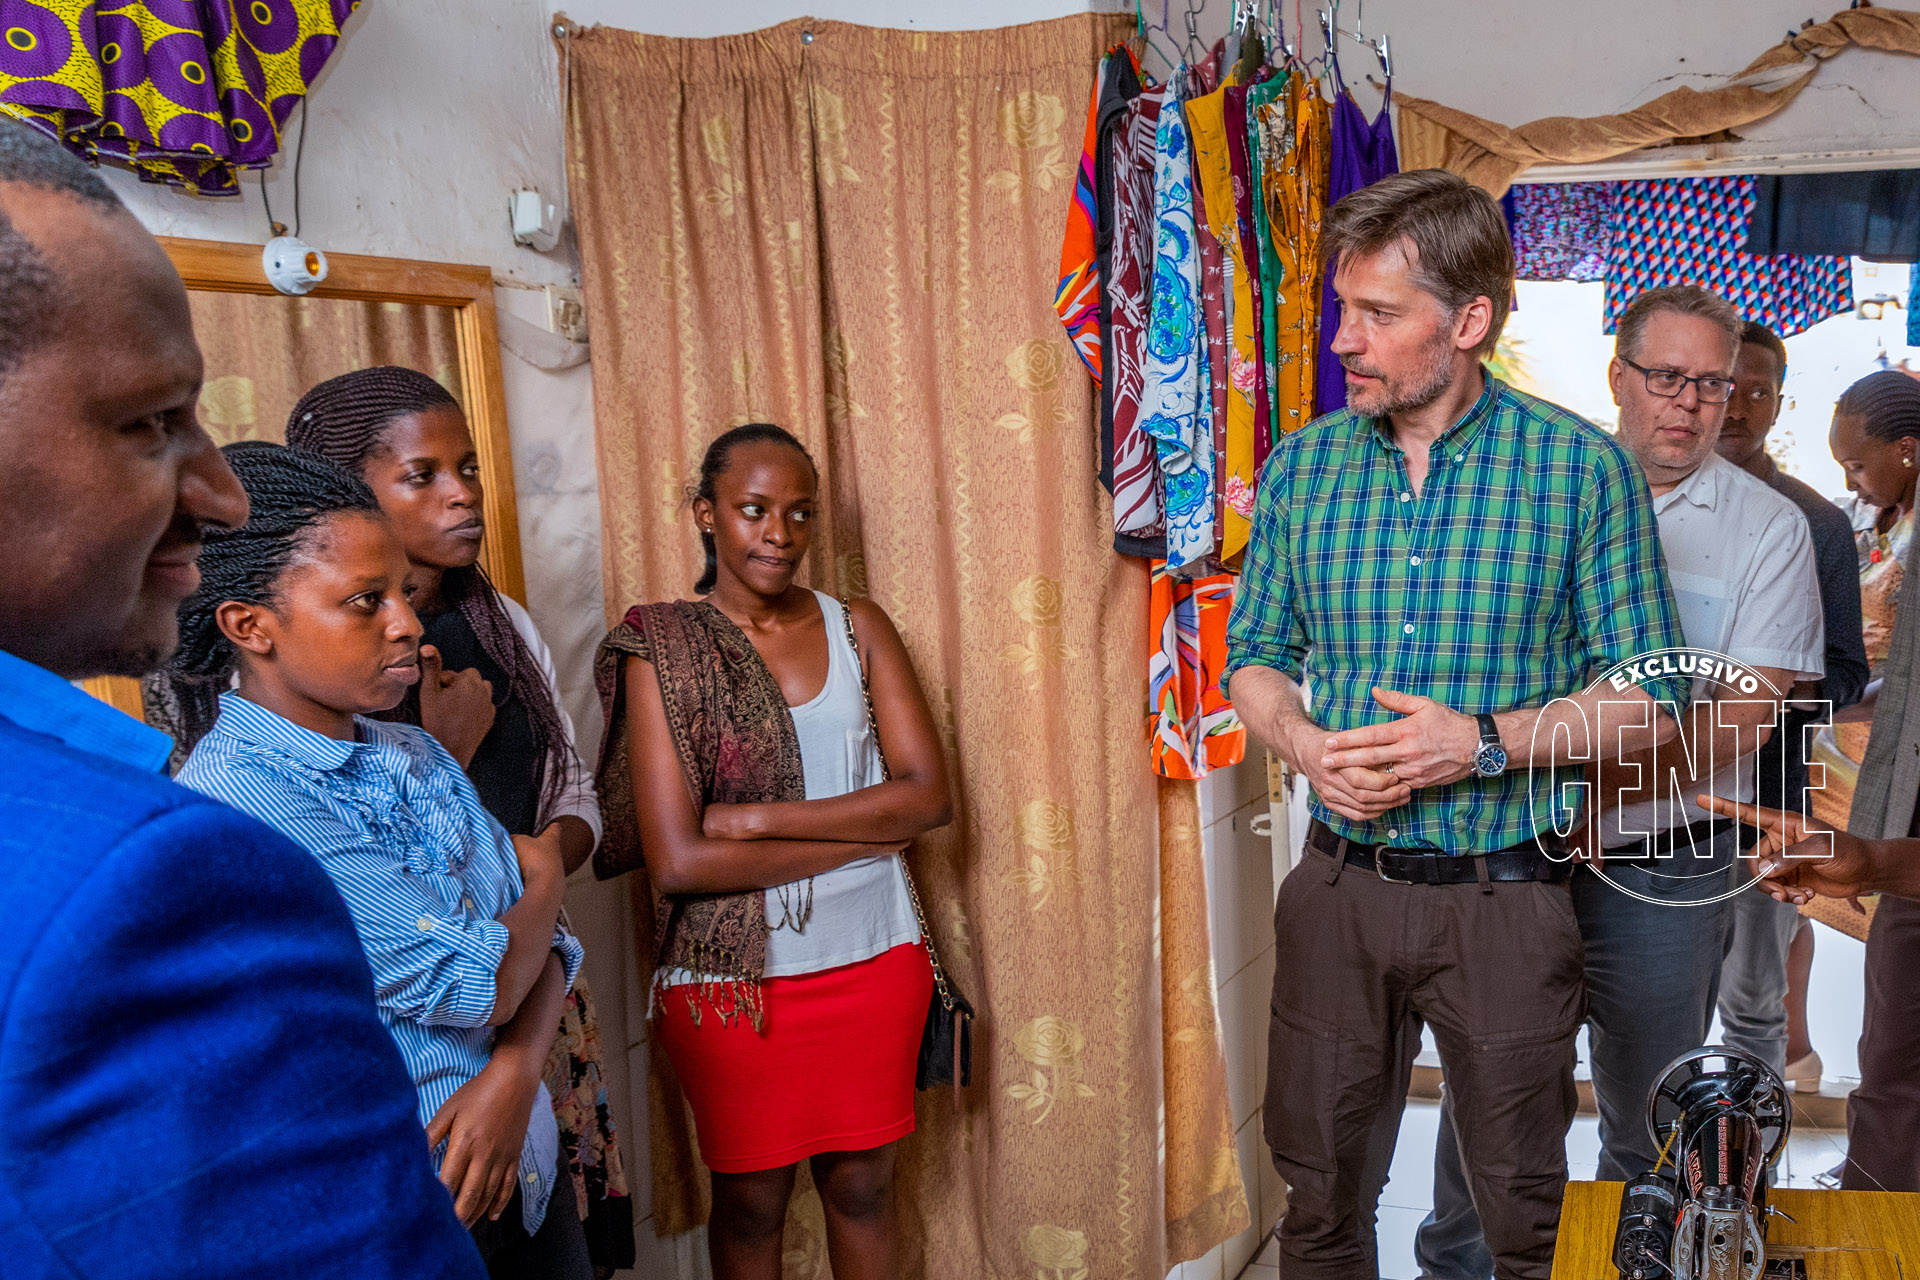 Como Embajador de Buena Voluntad del Programa de las Naciones Unidas para el Desarrollo, Nikolaj estuvo conversando con los vecinos de Ruanda.